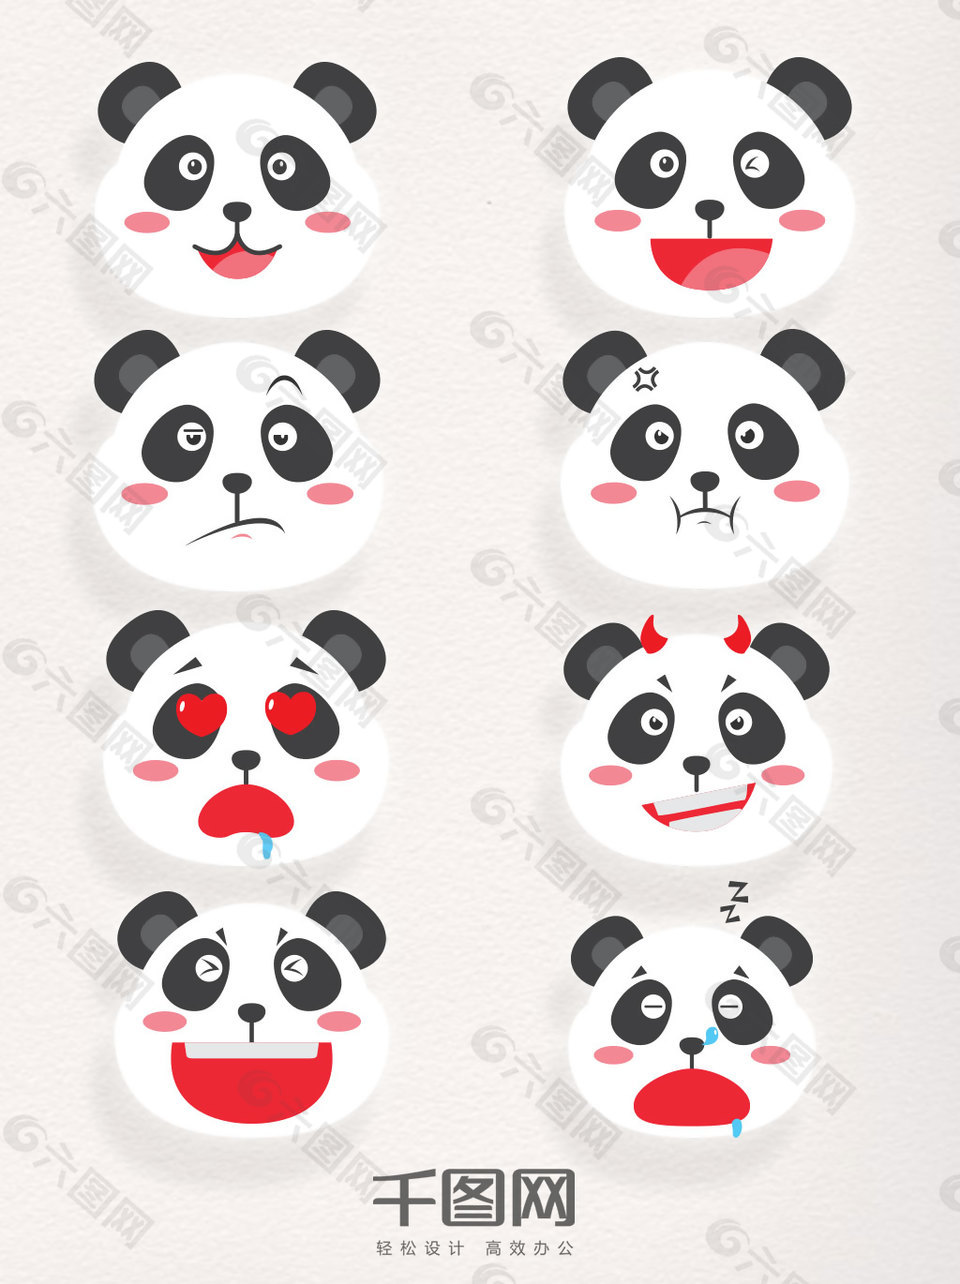 矢量素材卡通熊猫装饰元素表情包图案集合